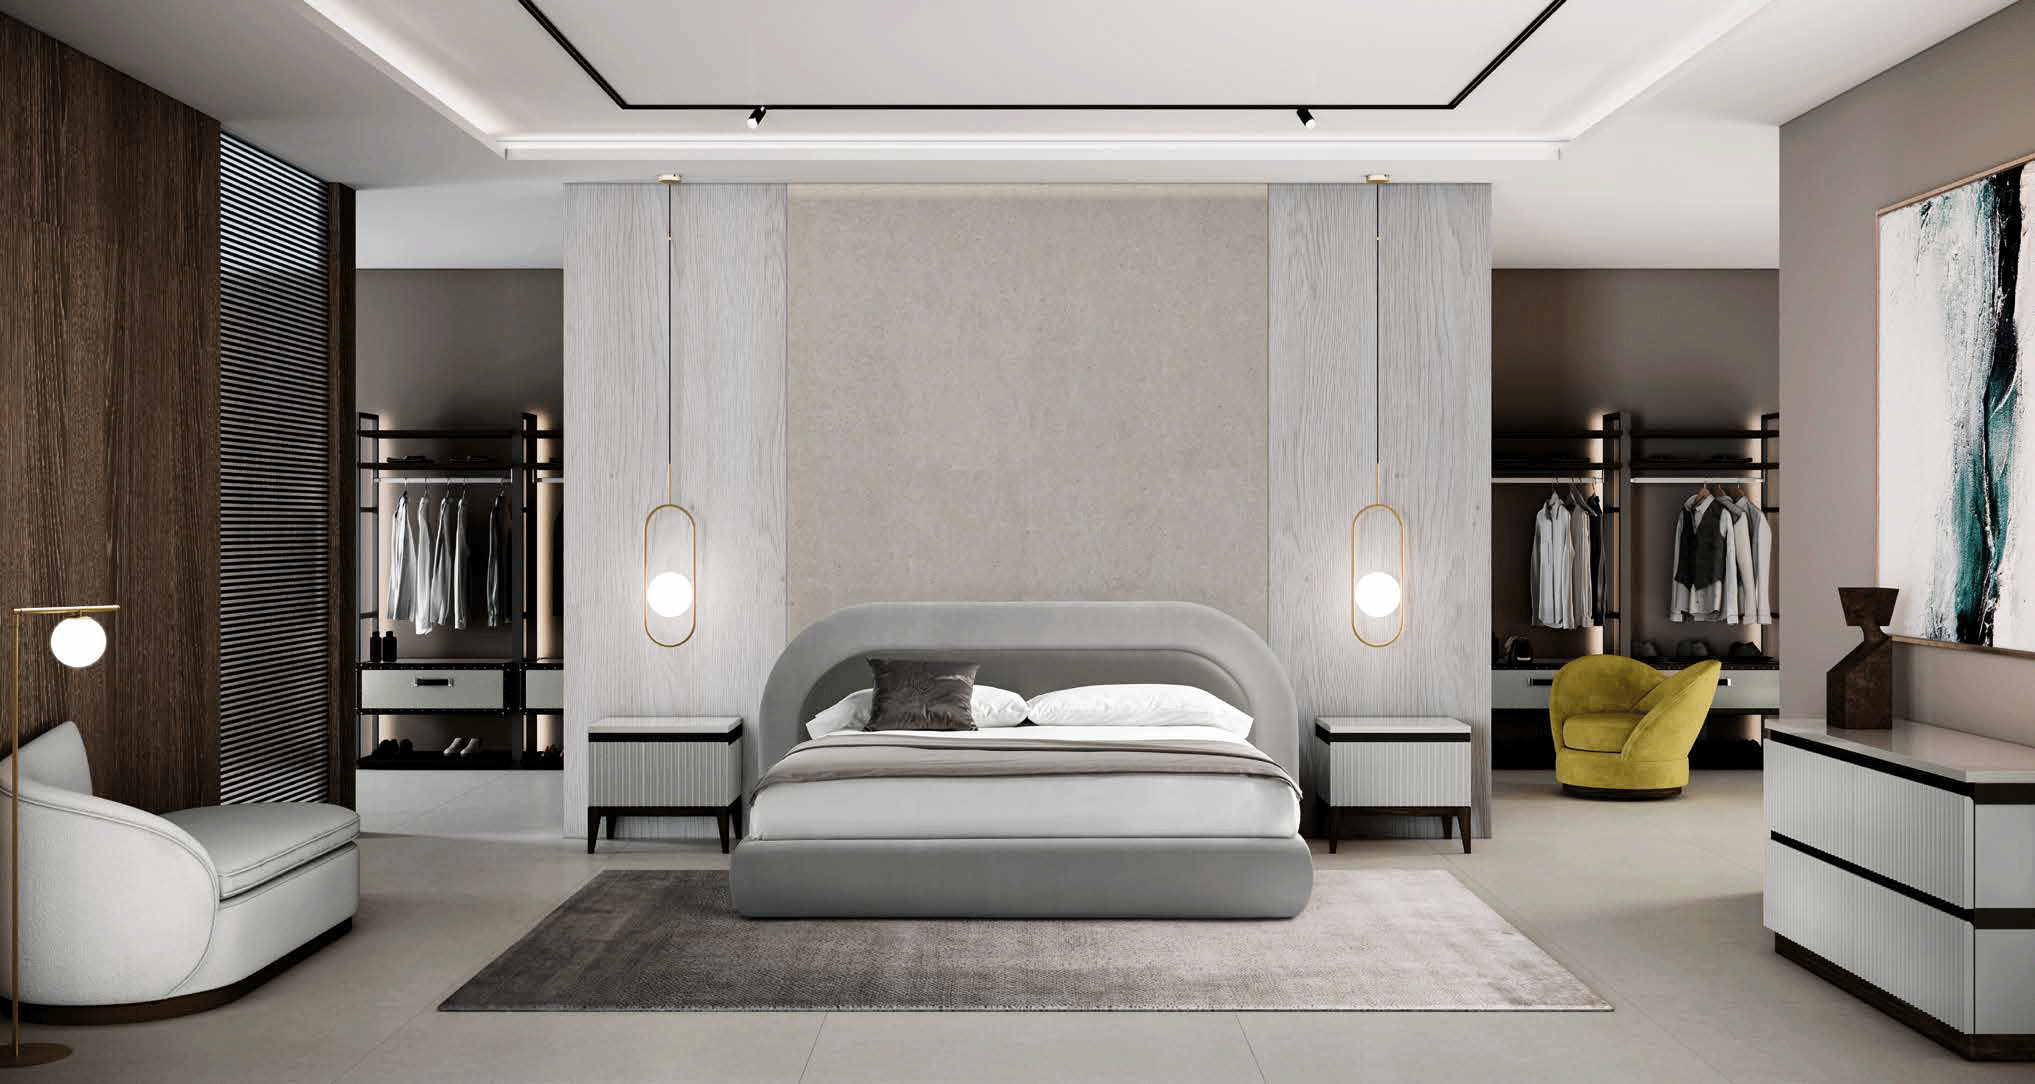 Bedroom Furniture Nightstands Orient Bedroom